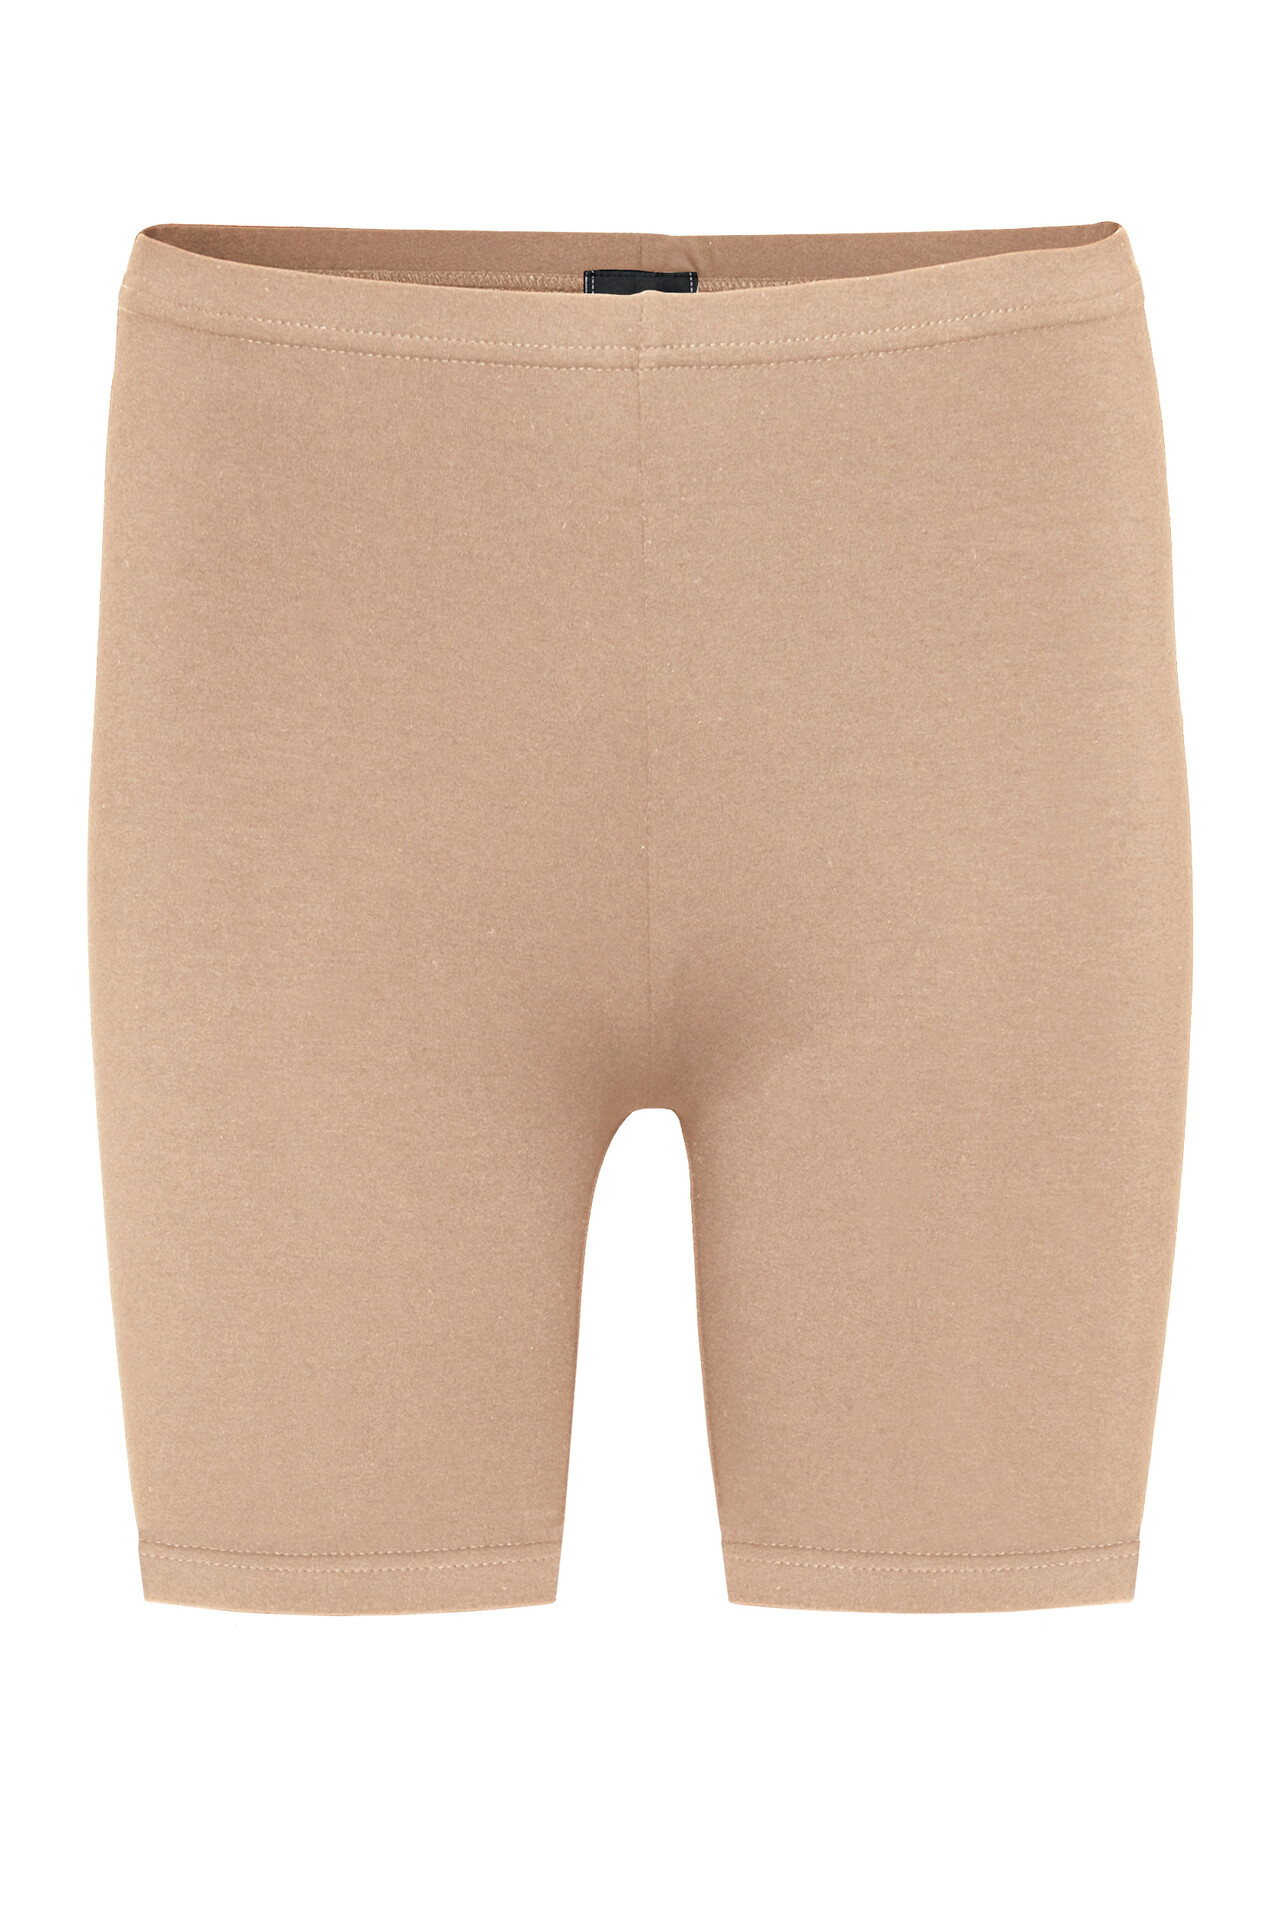 CRÉTON CRMamie shorts  (NUDE S)